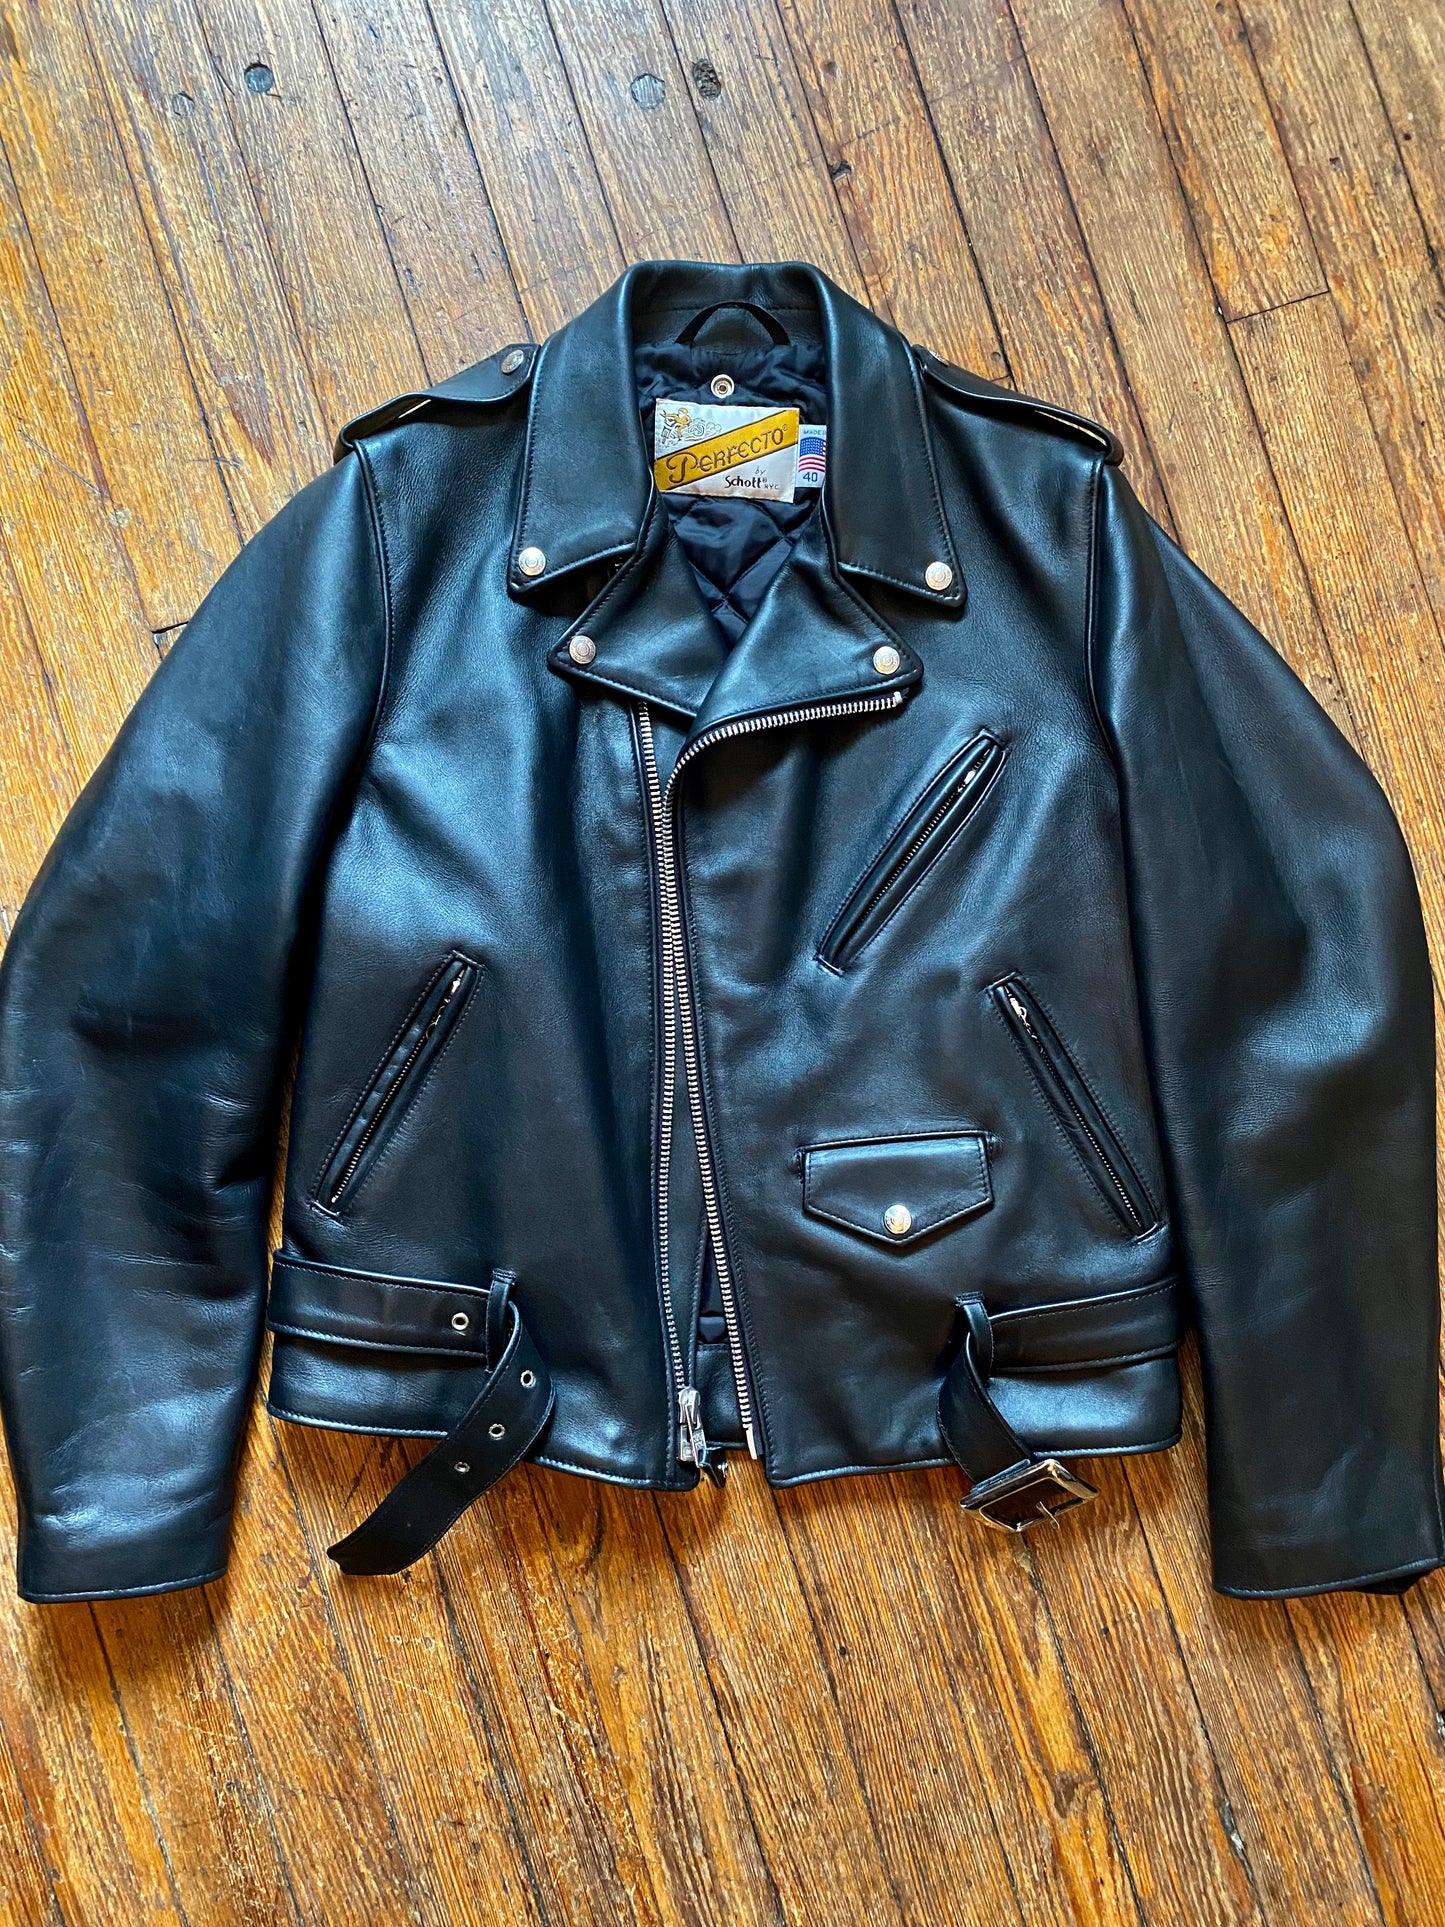 Brand New Schott “Perfecto” Motorcycle Jacket